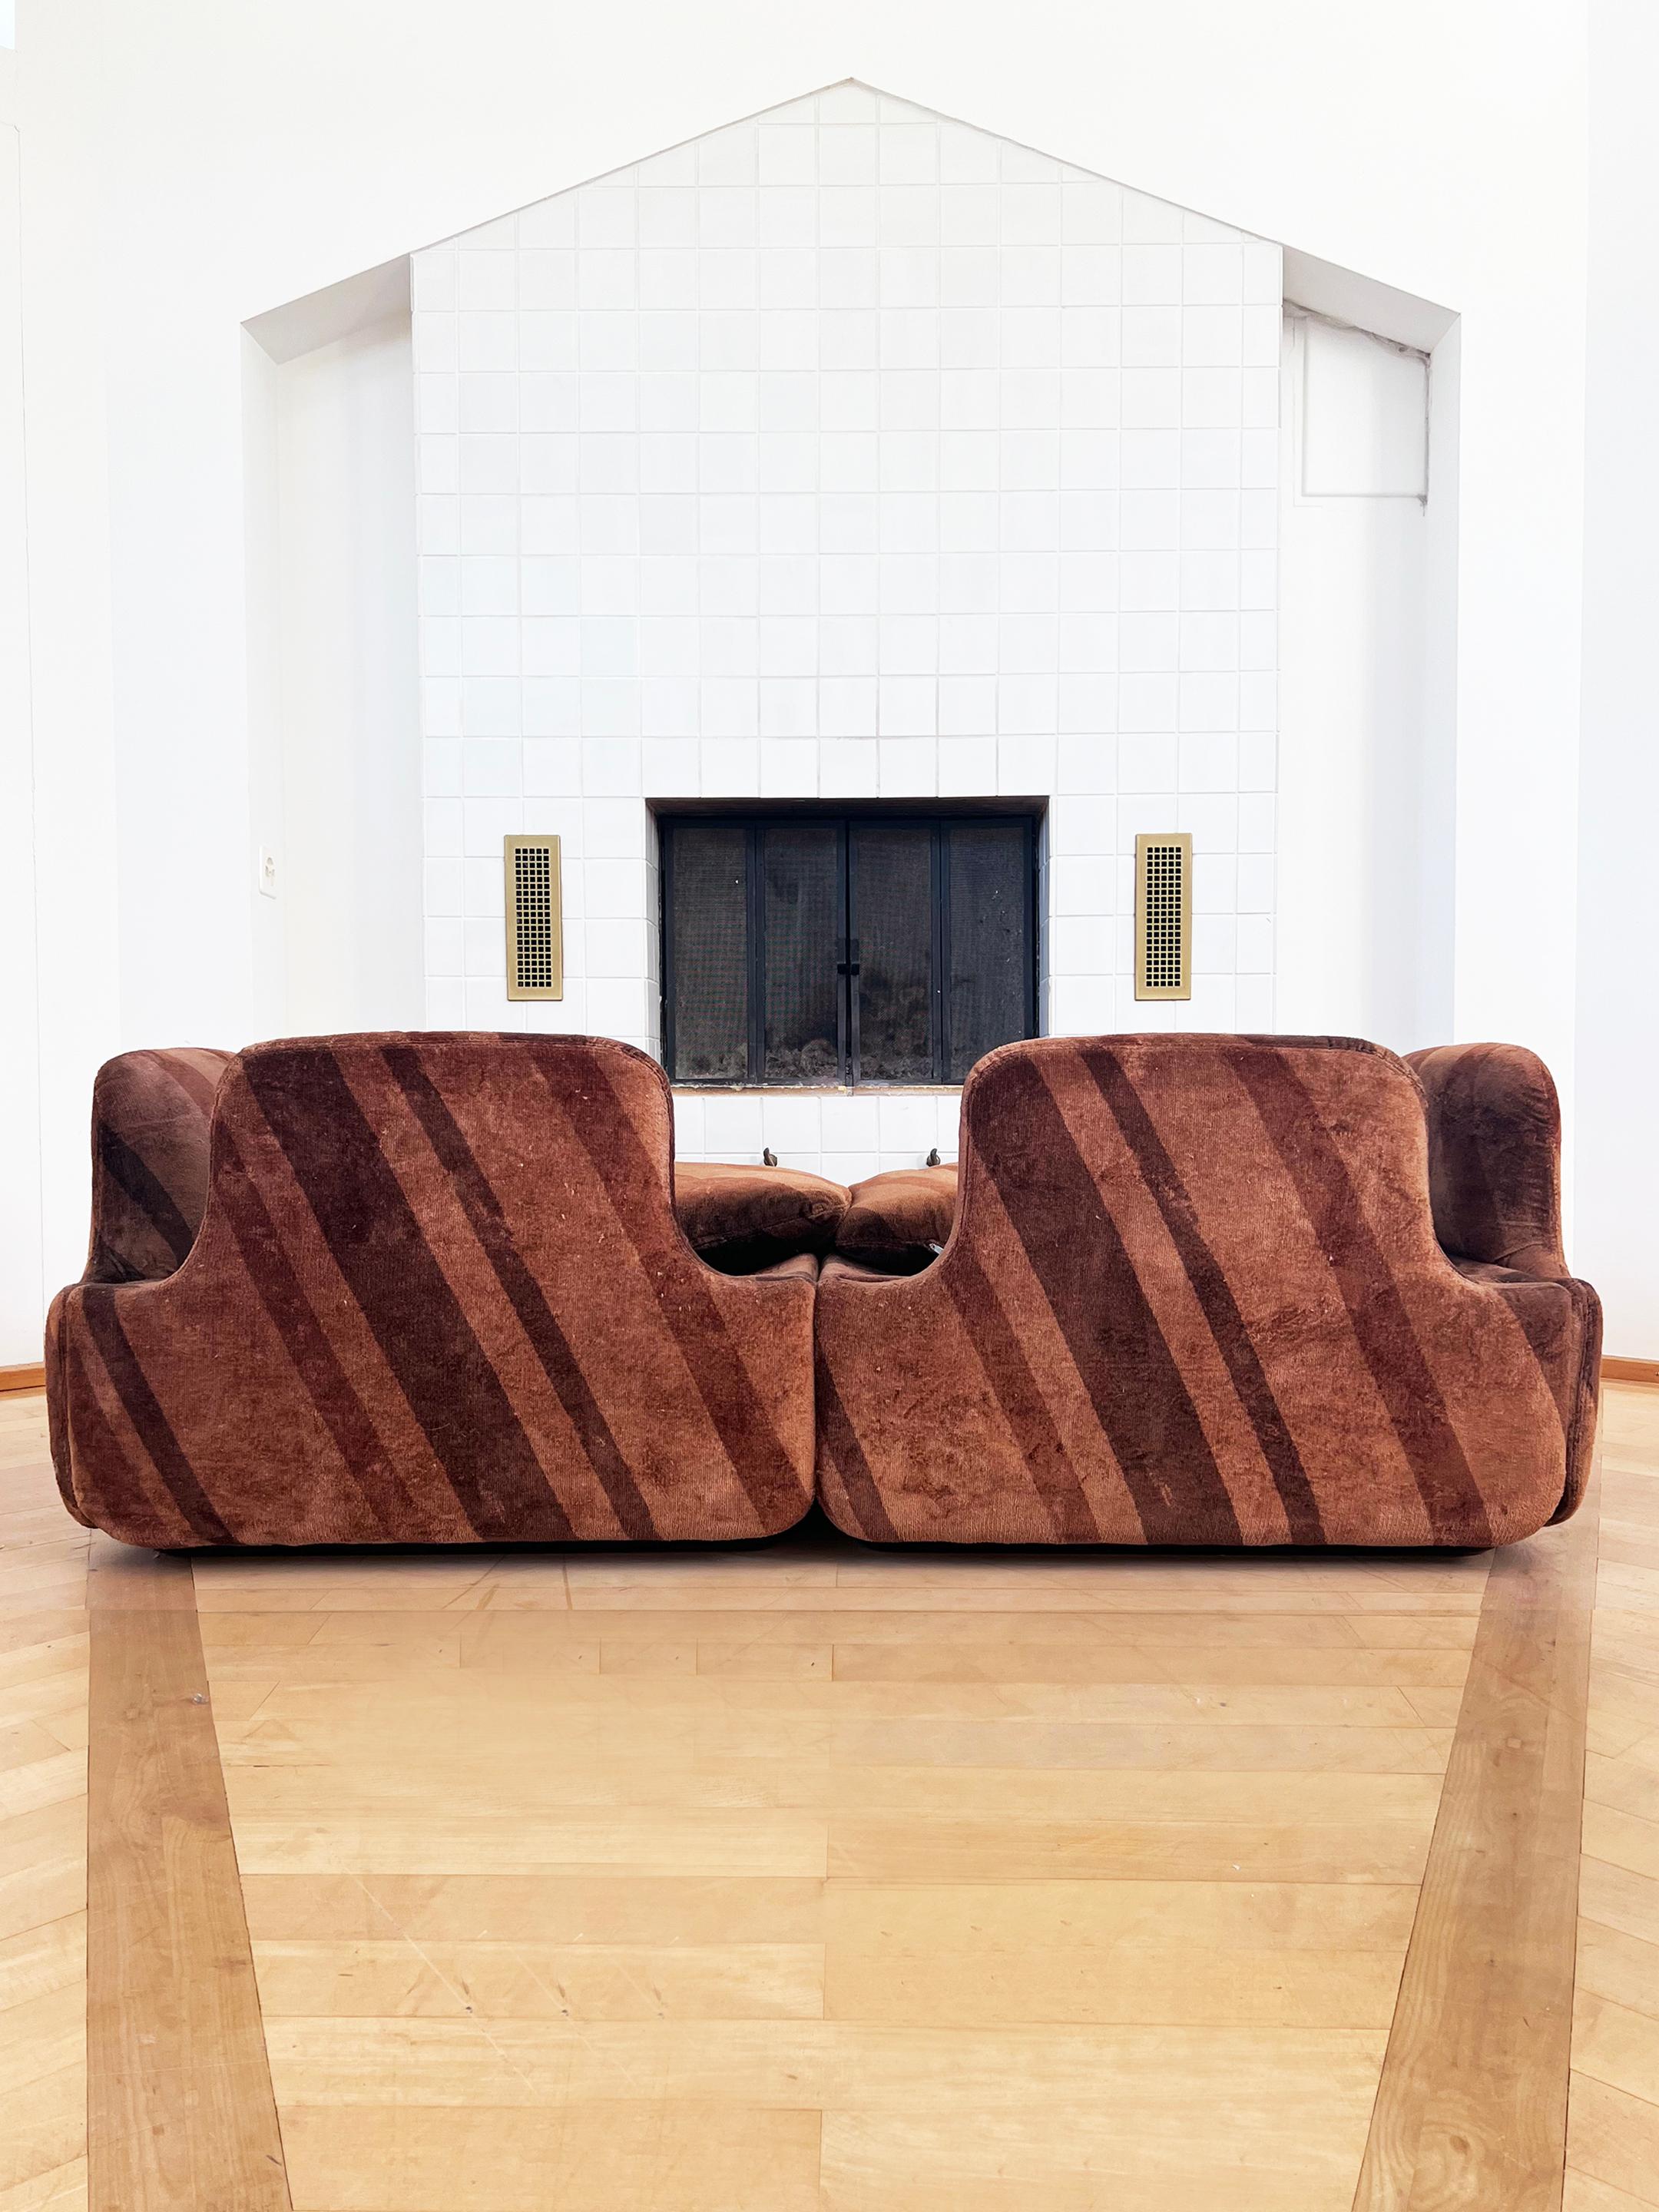 RARE Alberto Rosselli Sofa Two Seater for Saporiti 'Confidential', Italy, 1970s For Sale 4